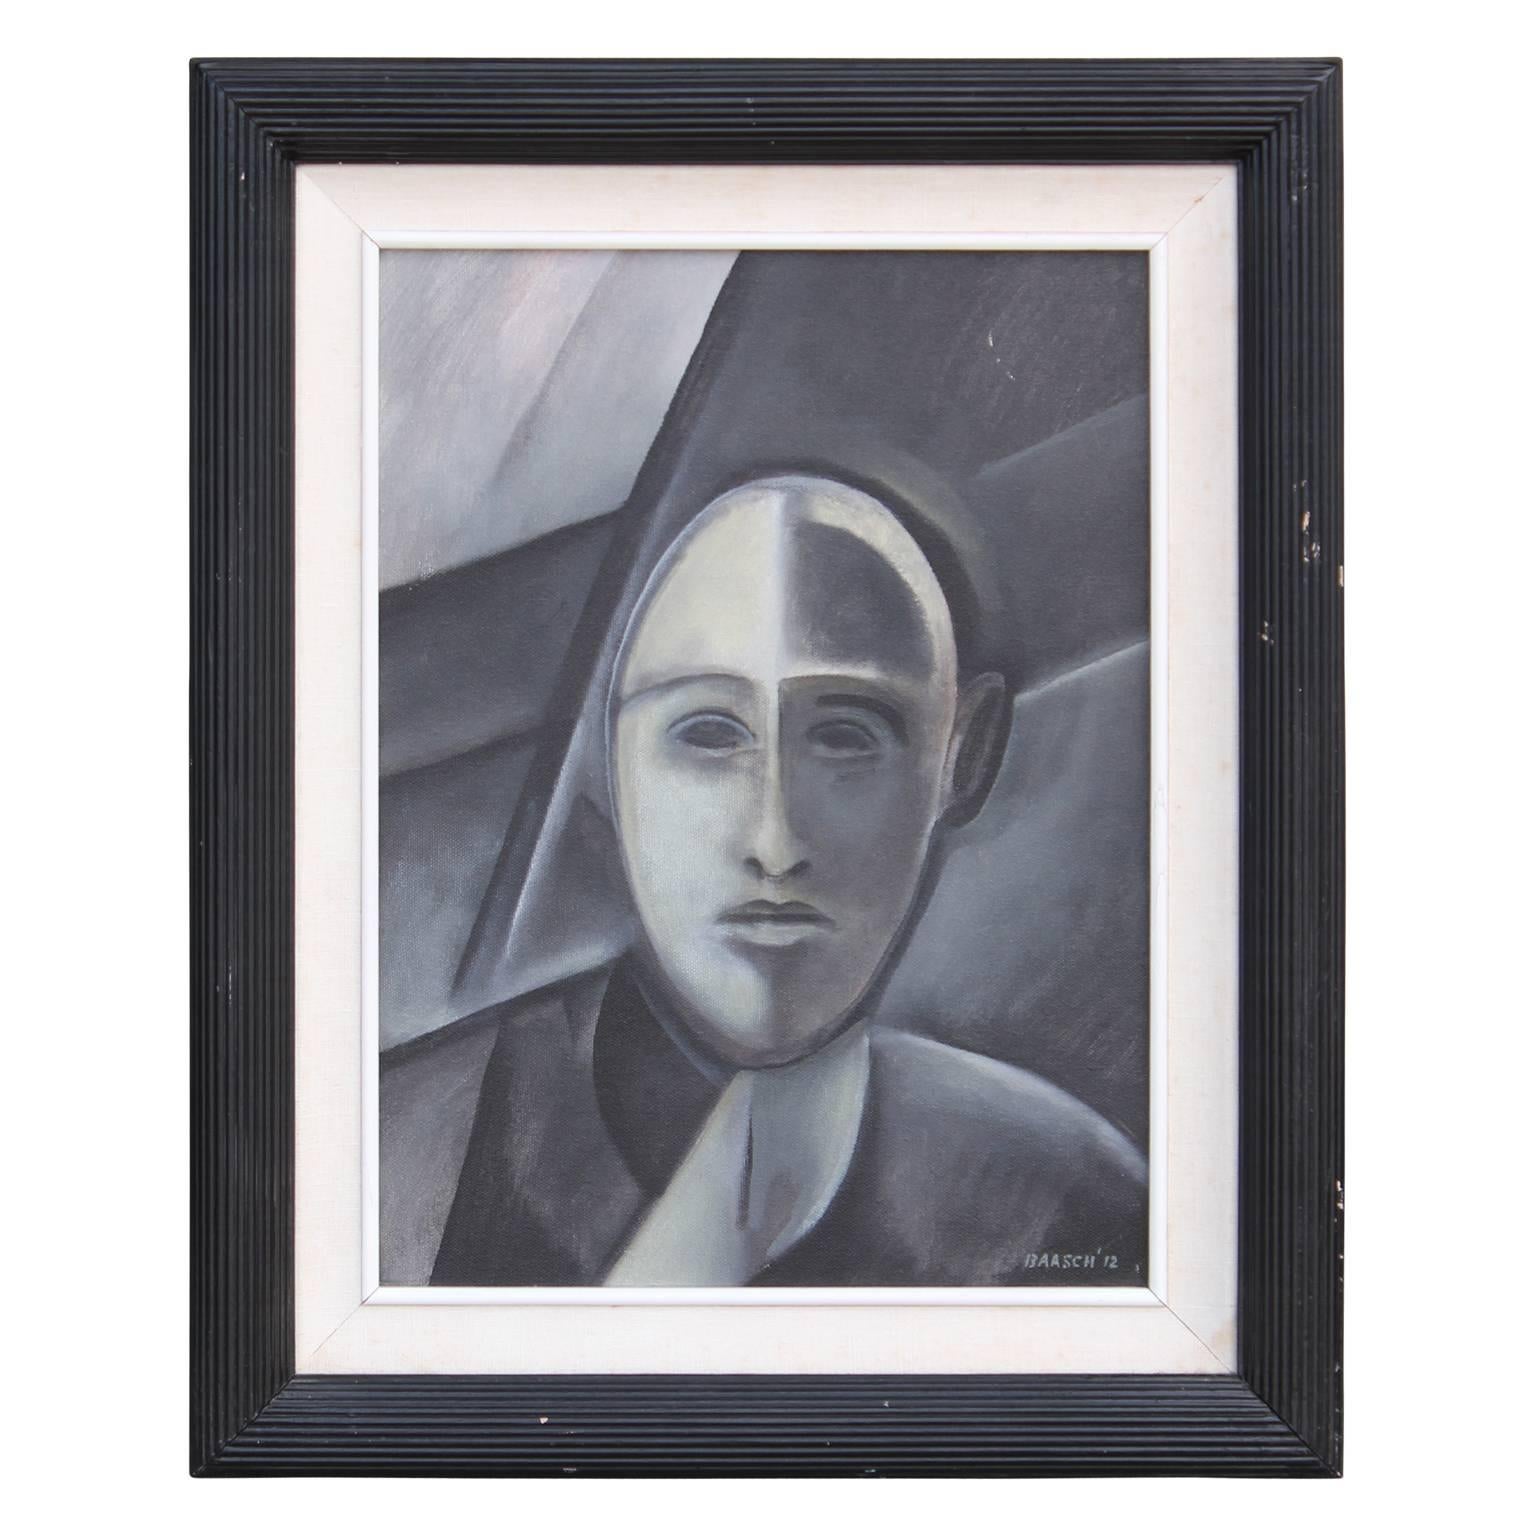 Figurative Painting Norman Baasch - Portrait gris d'un homme, portrait cubiste